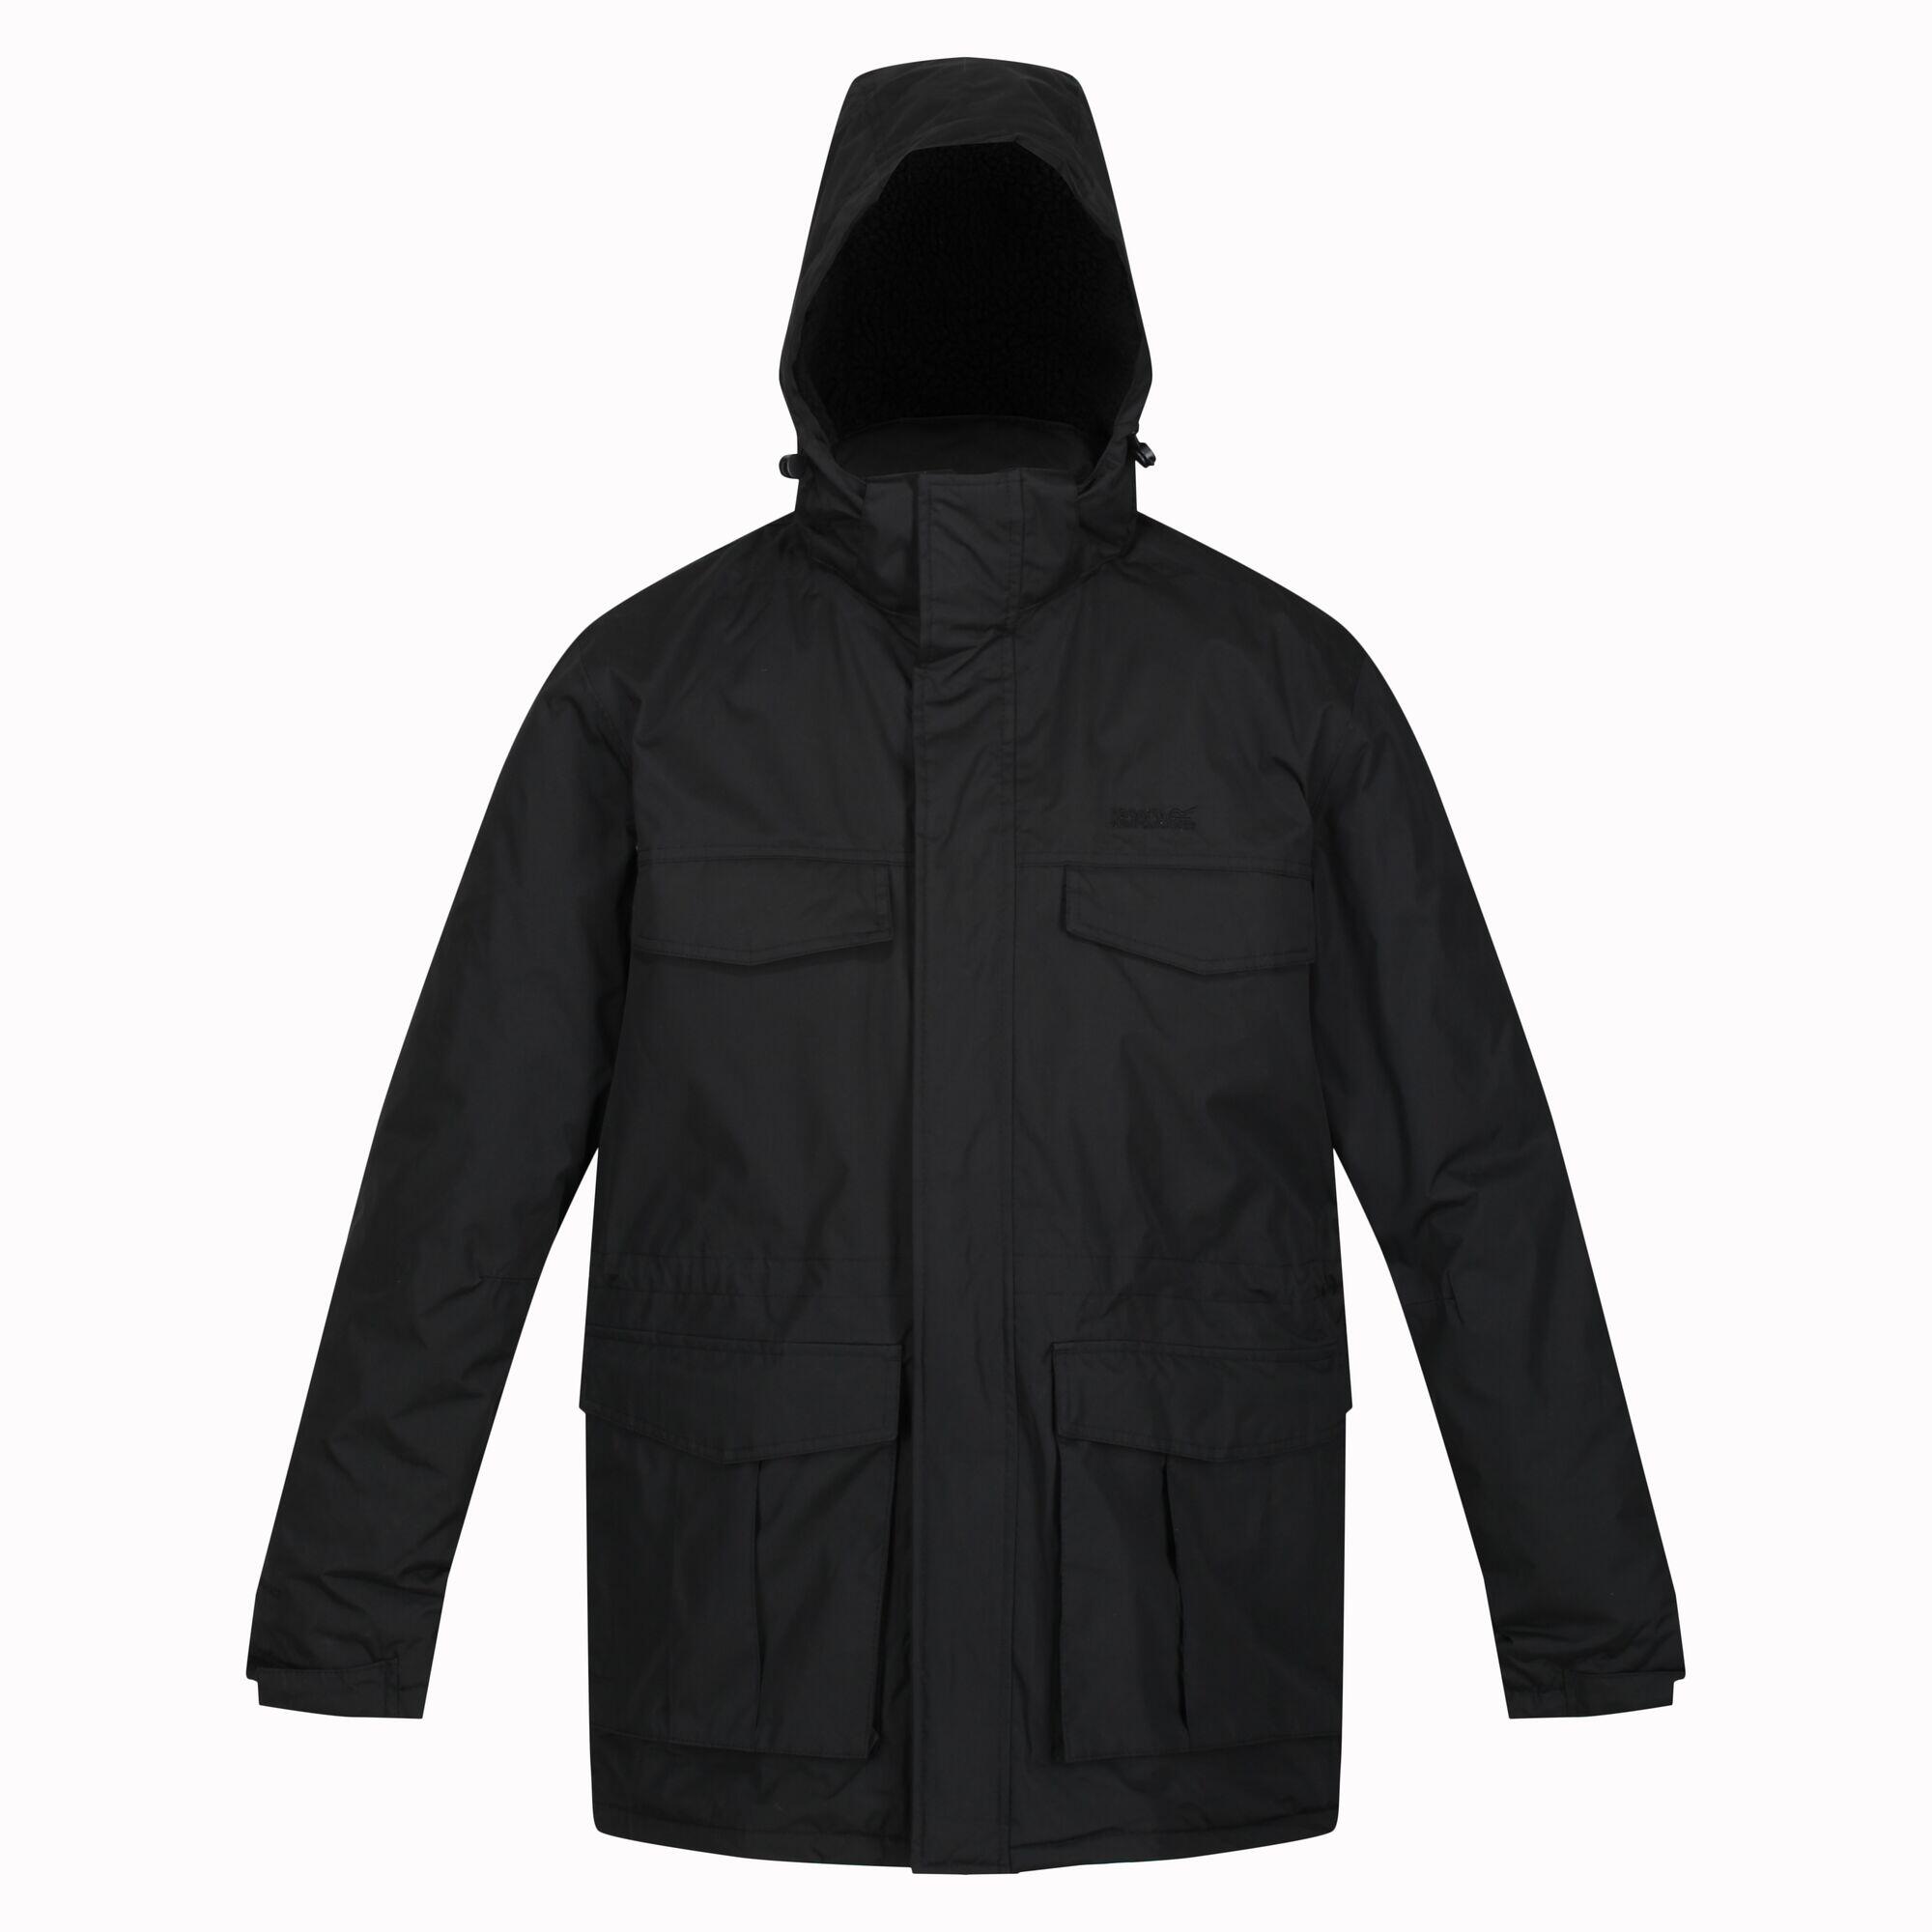 Куртка-парка Regatta Palben непромокаемая утепленная с капюшоном мужская,черный – заказать по доступной цене из-за рубежа в «CDEK.Shopping»